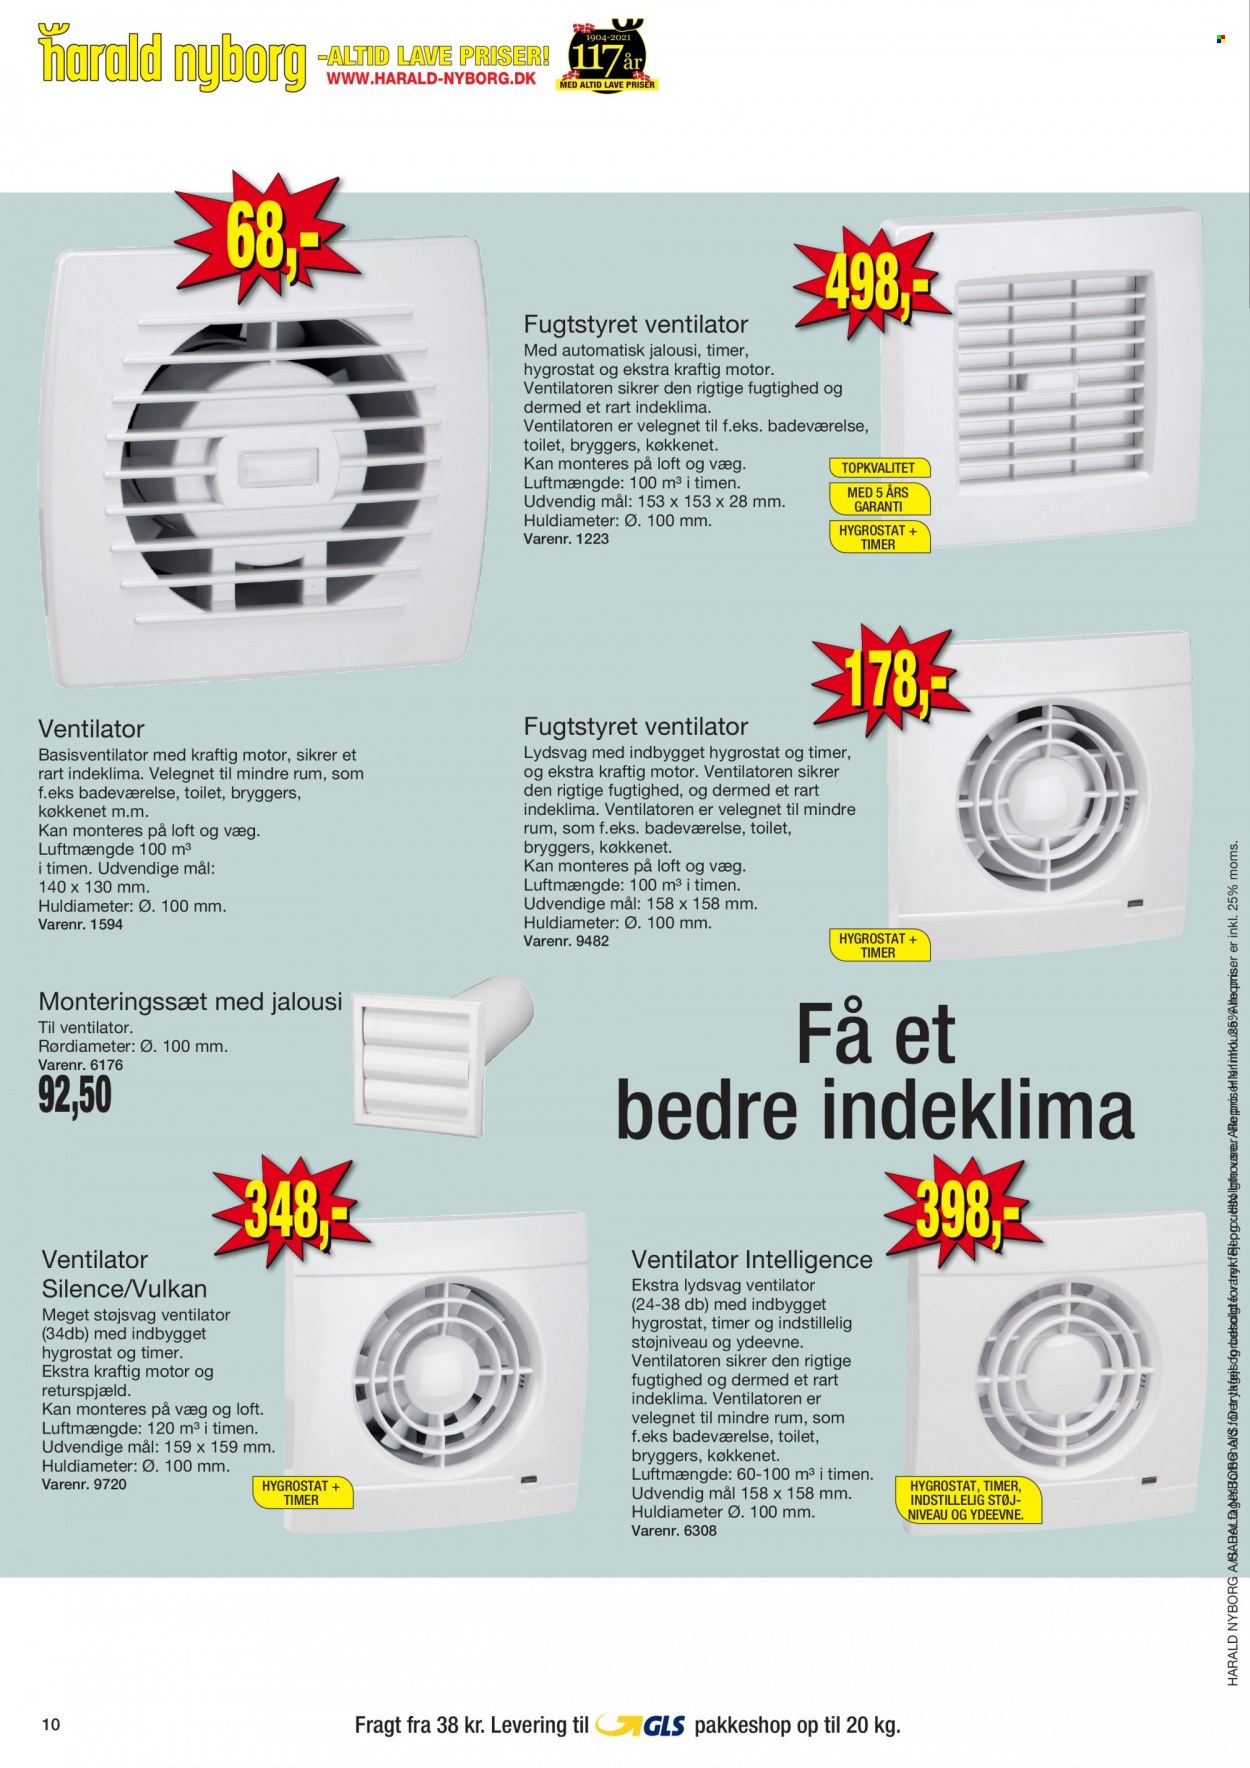 thumbnail - Harald Nyborg tilbud  - 25.11.2021 - 1.12.2021 - tilbudsprodukter - ventilator, toilet. Side 10.